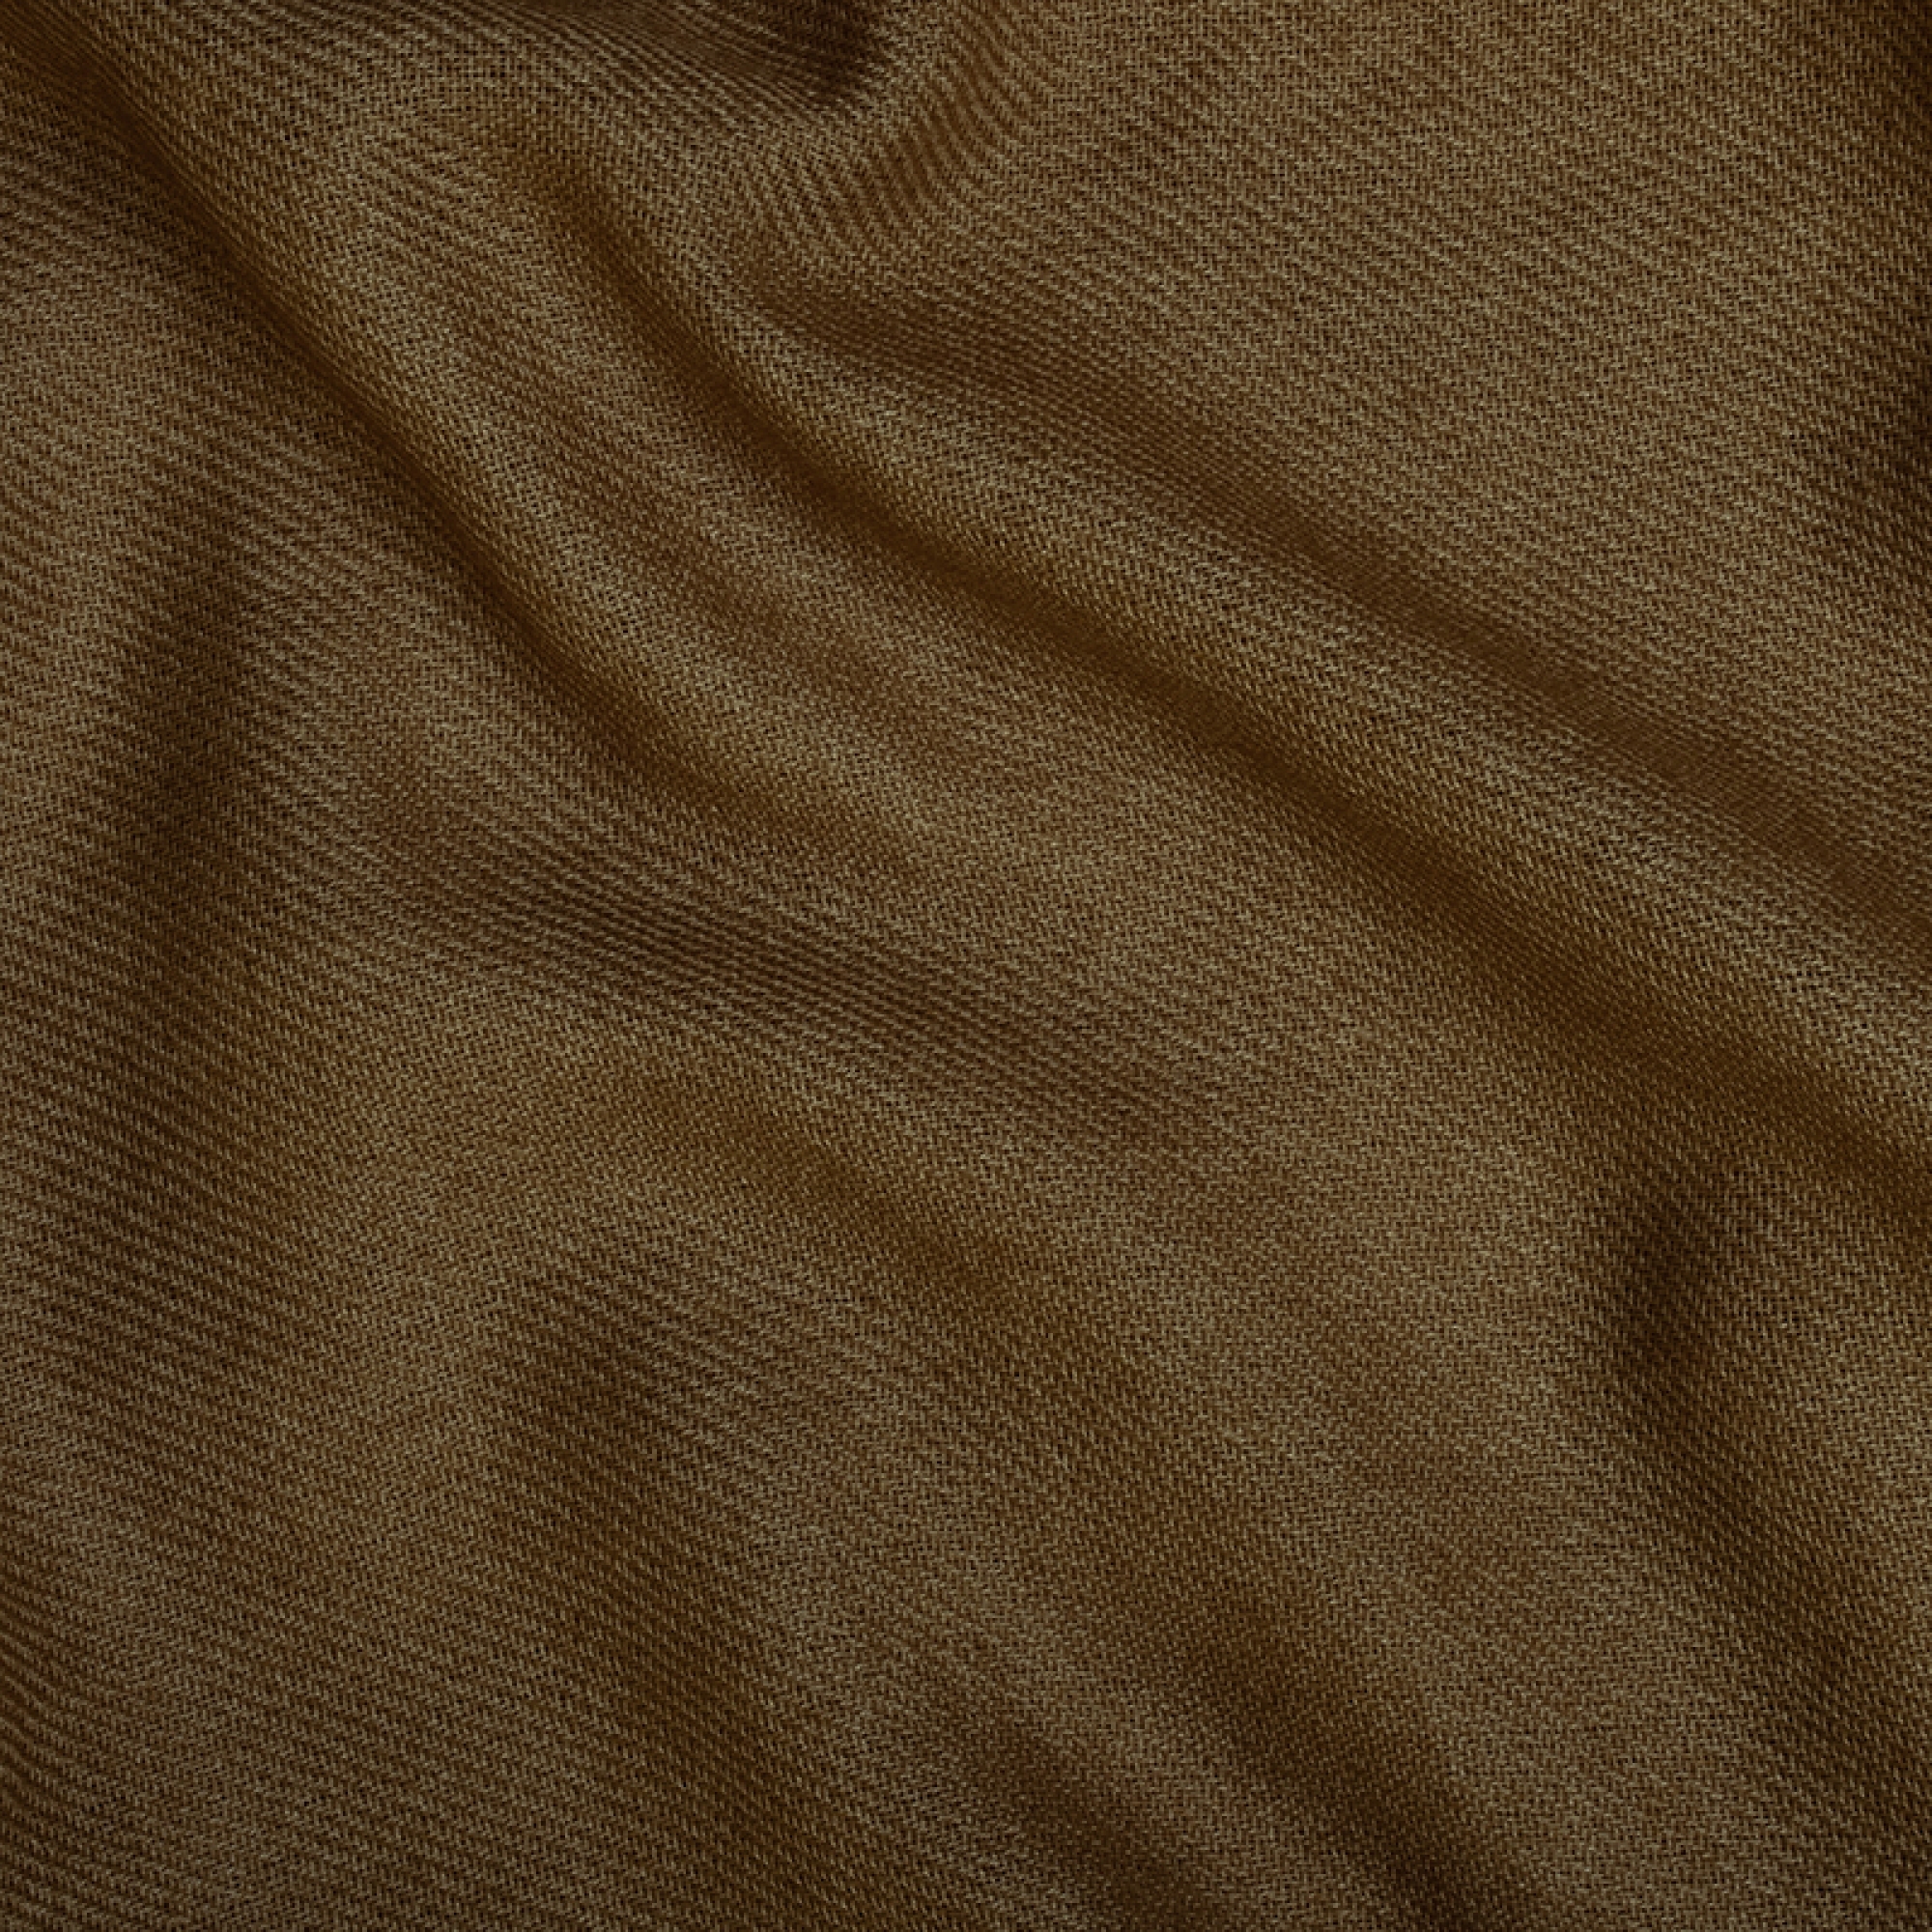 Cachemire accessoires couvertures plaids toodoo plain s 140 x 200 bronze 140 x 200 cm